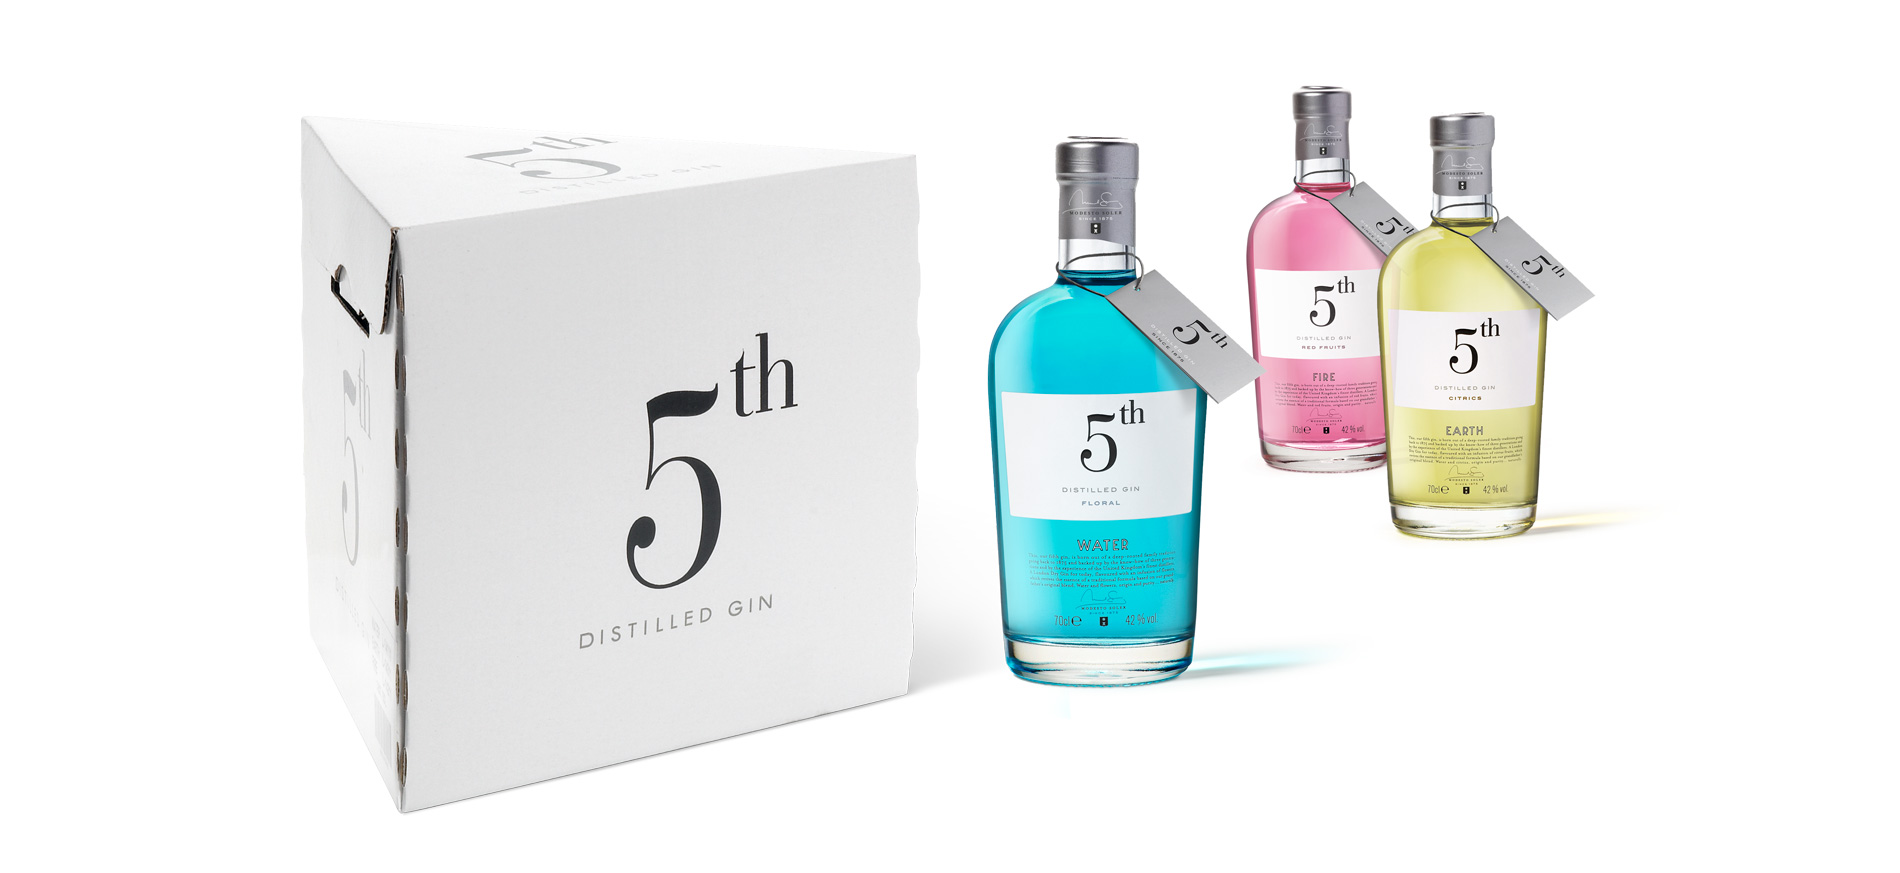 Diseño del Packaging de New 5th Gin de Destilerias del Maresme por Puigdemont Roca Design Agency